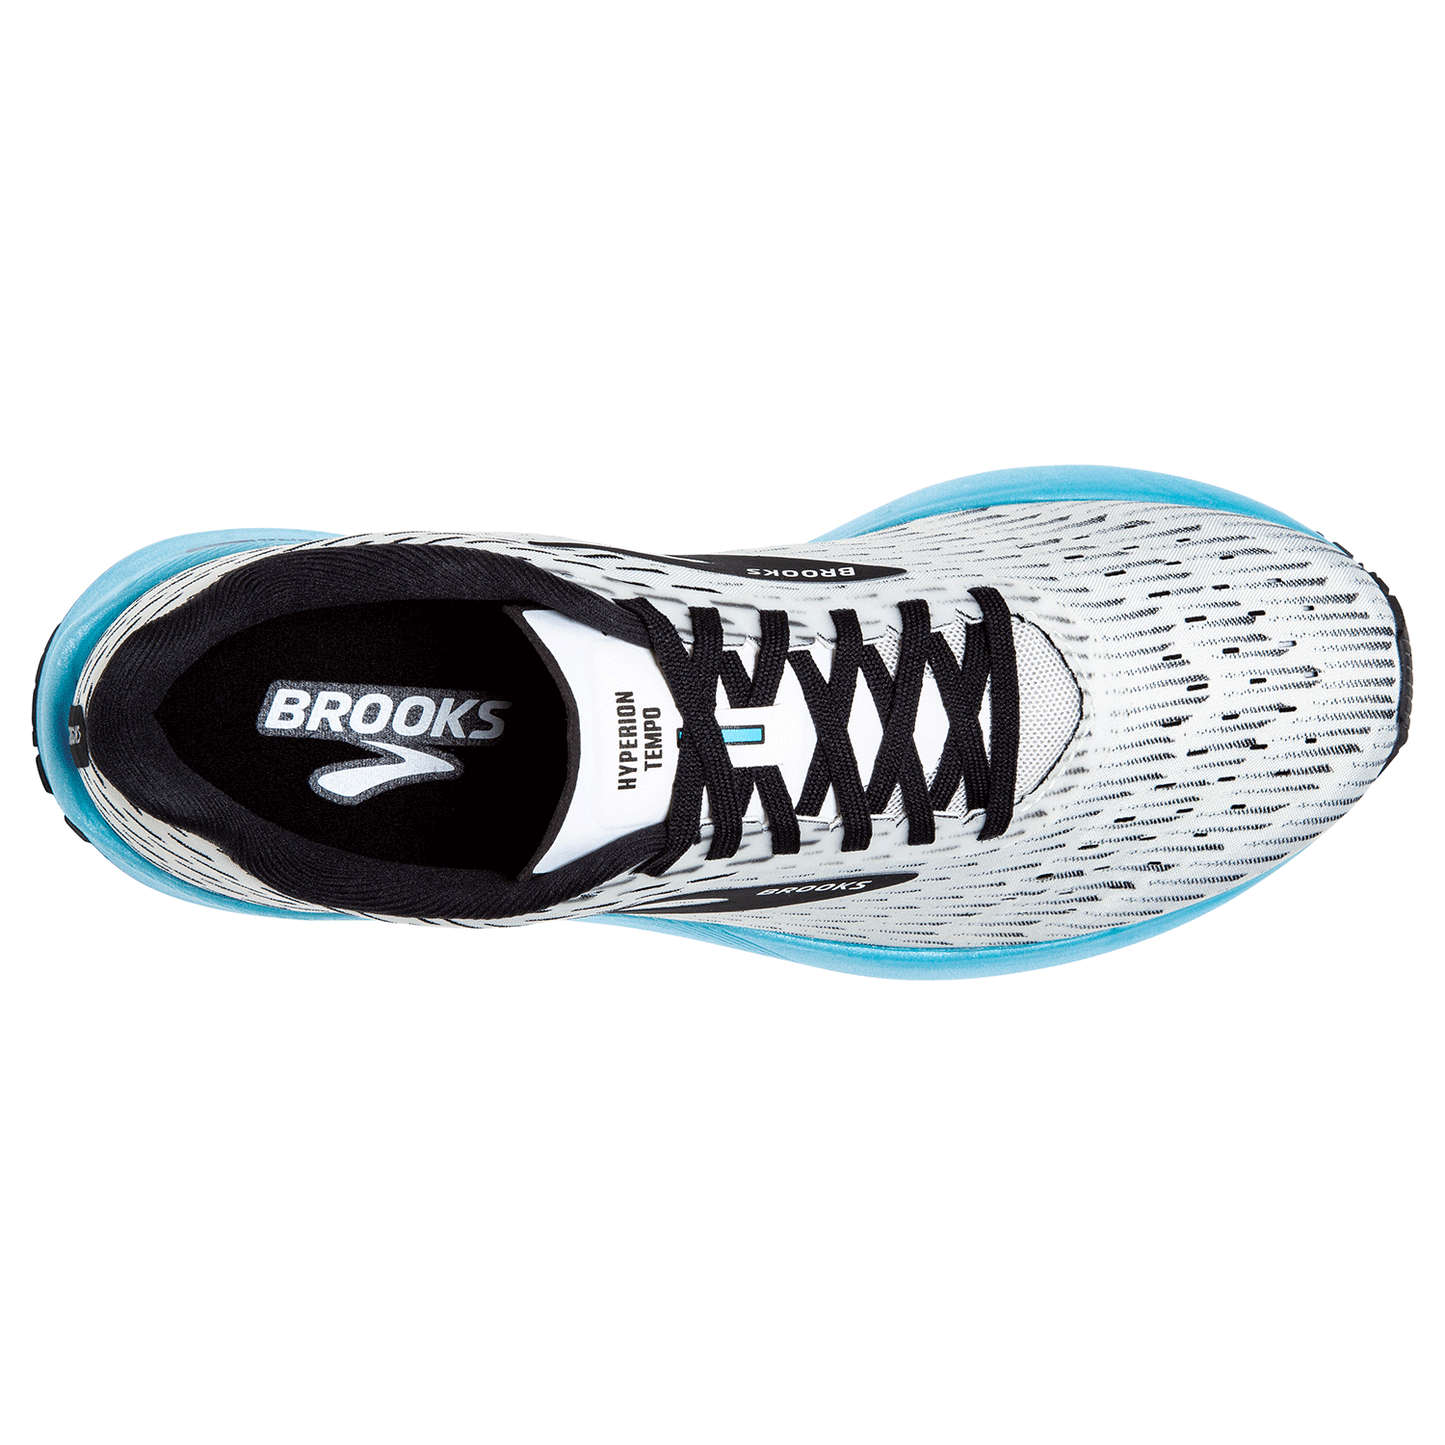 Men's Hyperion Tempo Running Shoe - White/Black/Iced Aqua - Regular (D)